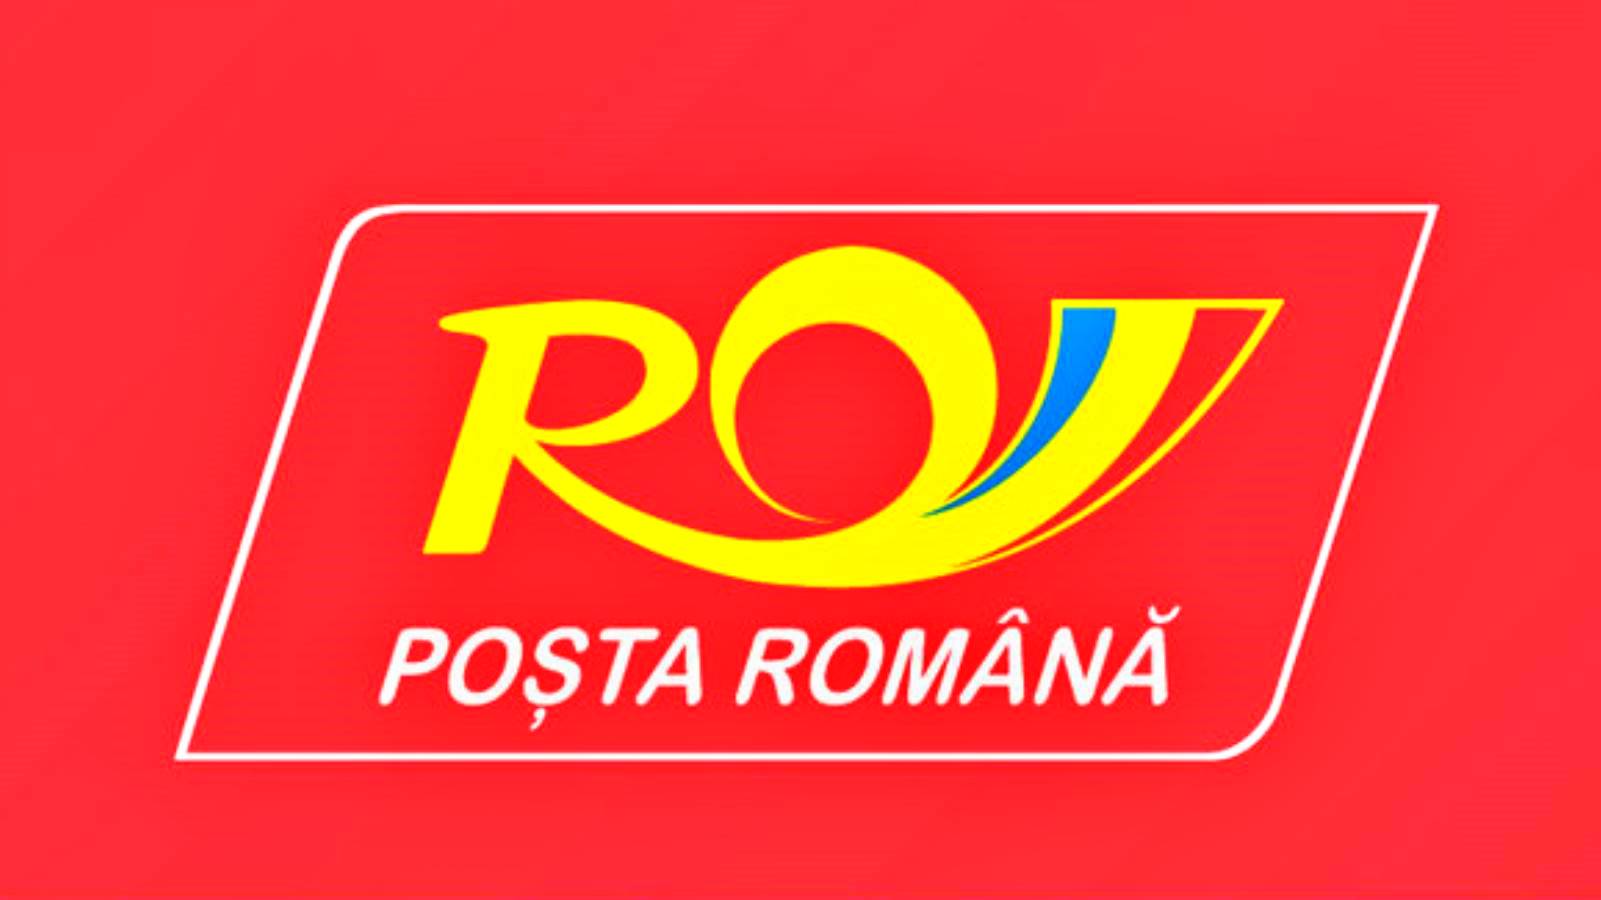 Message de la poste roumaine pour les Roumains concernant les prix avantageux pour les expéditions